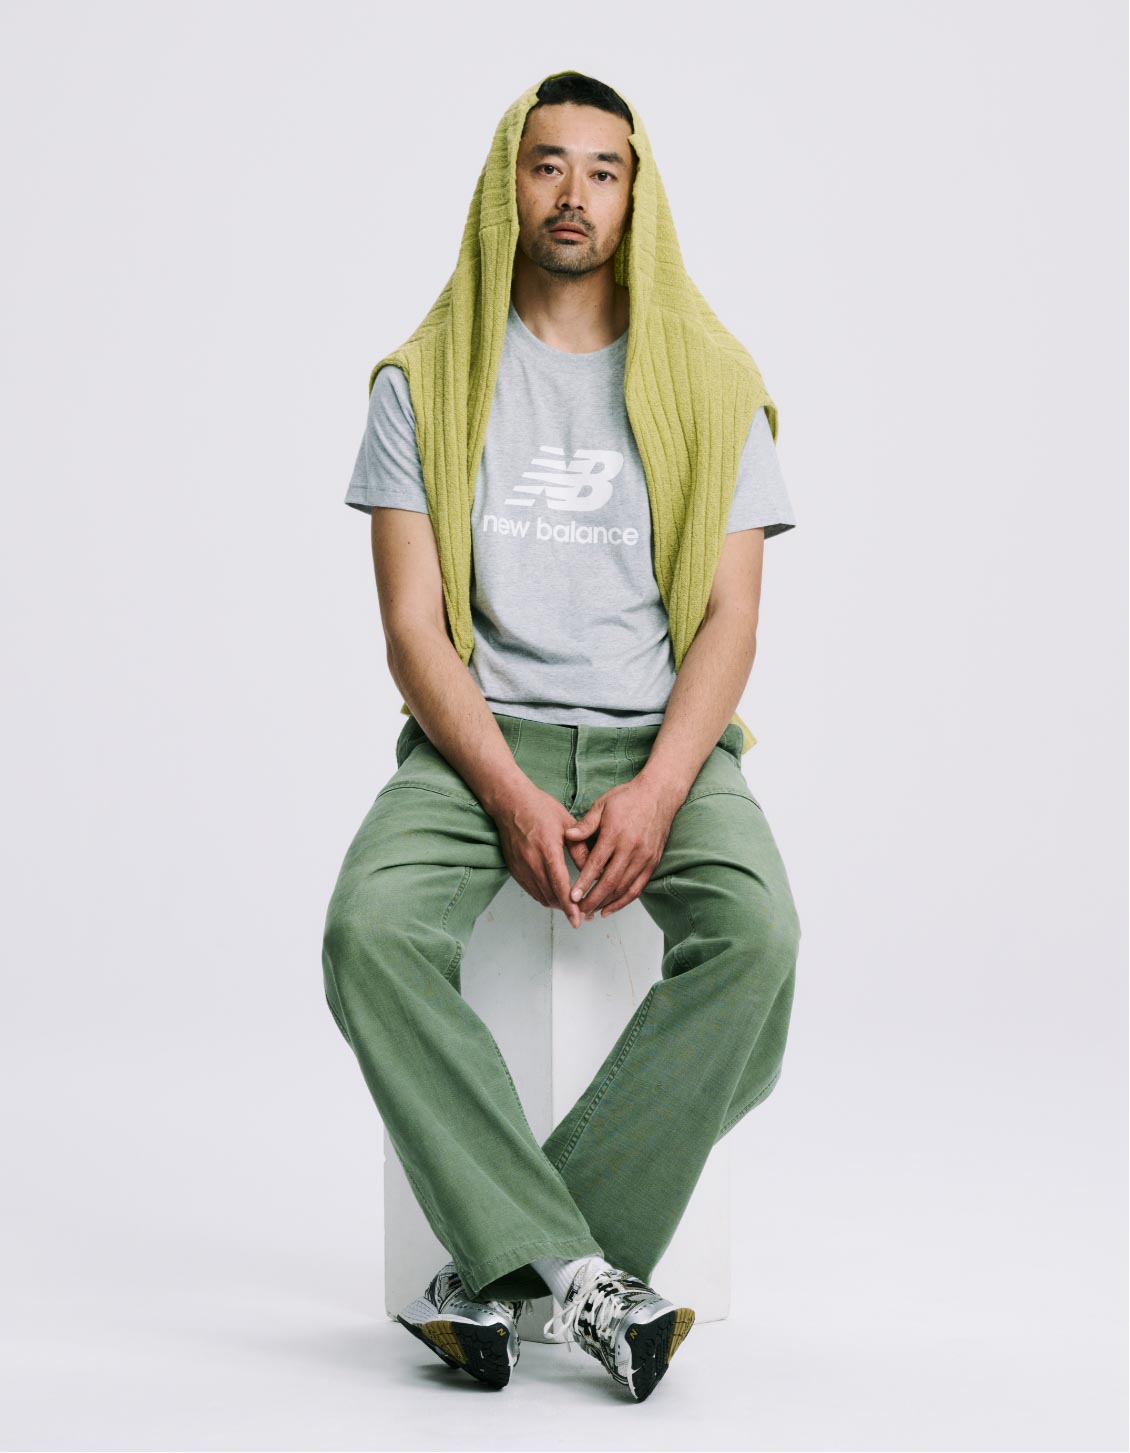 Yoichi Owashi model photo